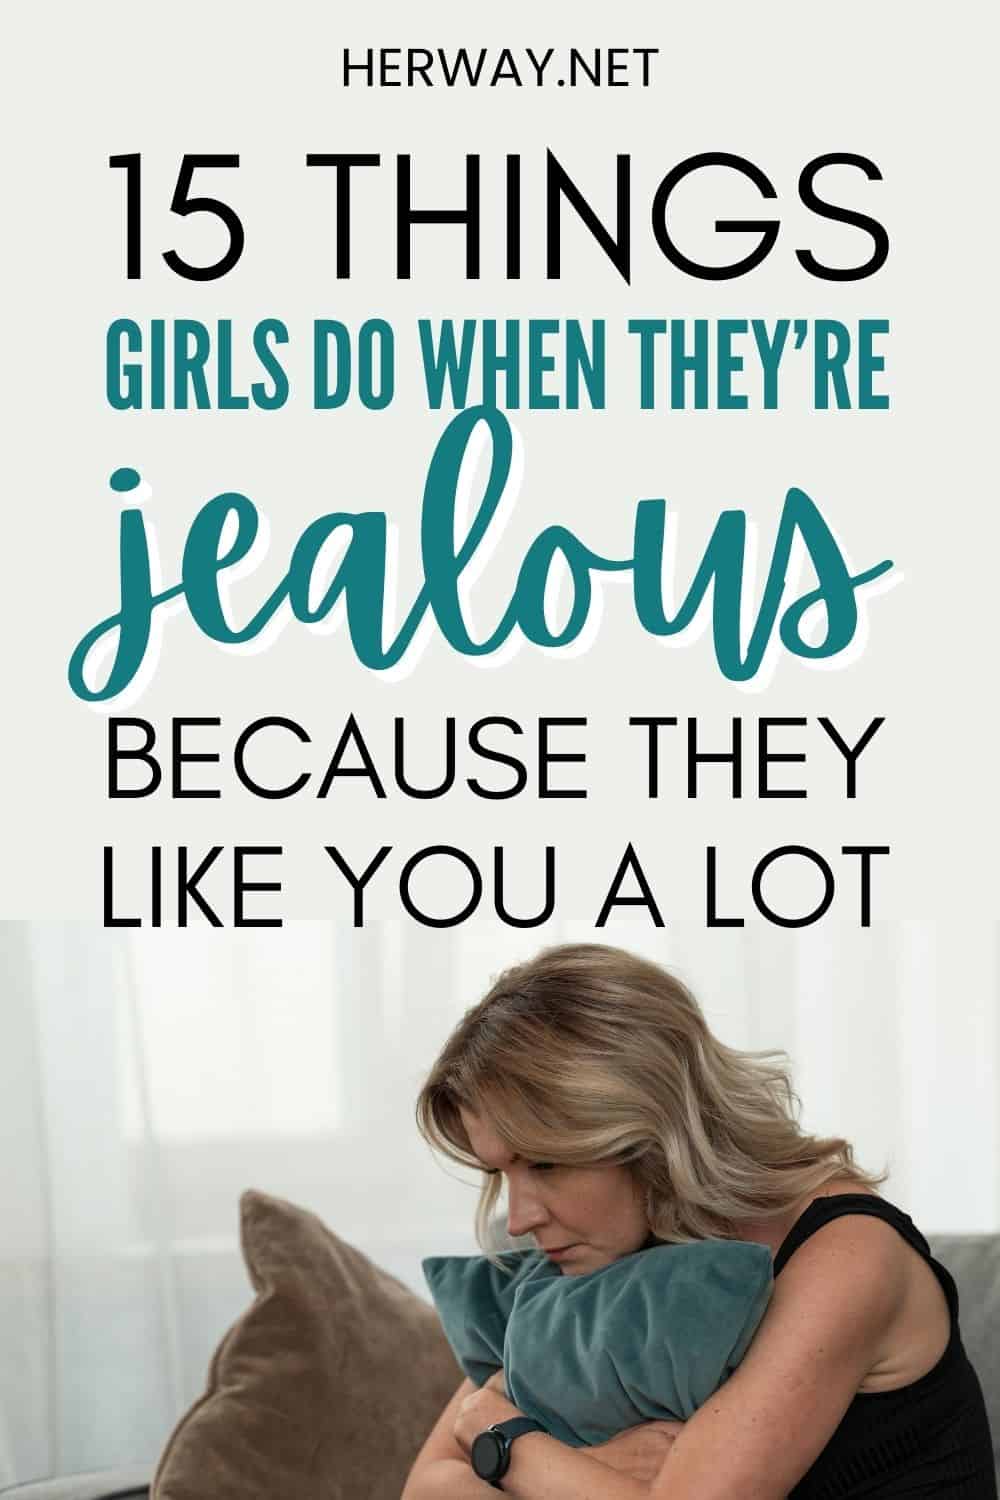 15 chiari segni che una ragazza è gelosa e le piaci molto Pinterest